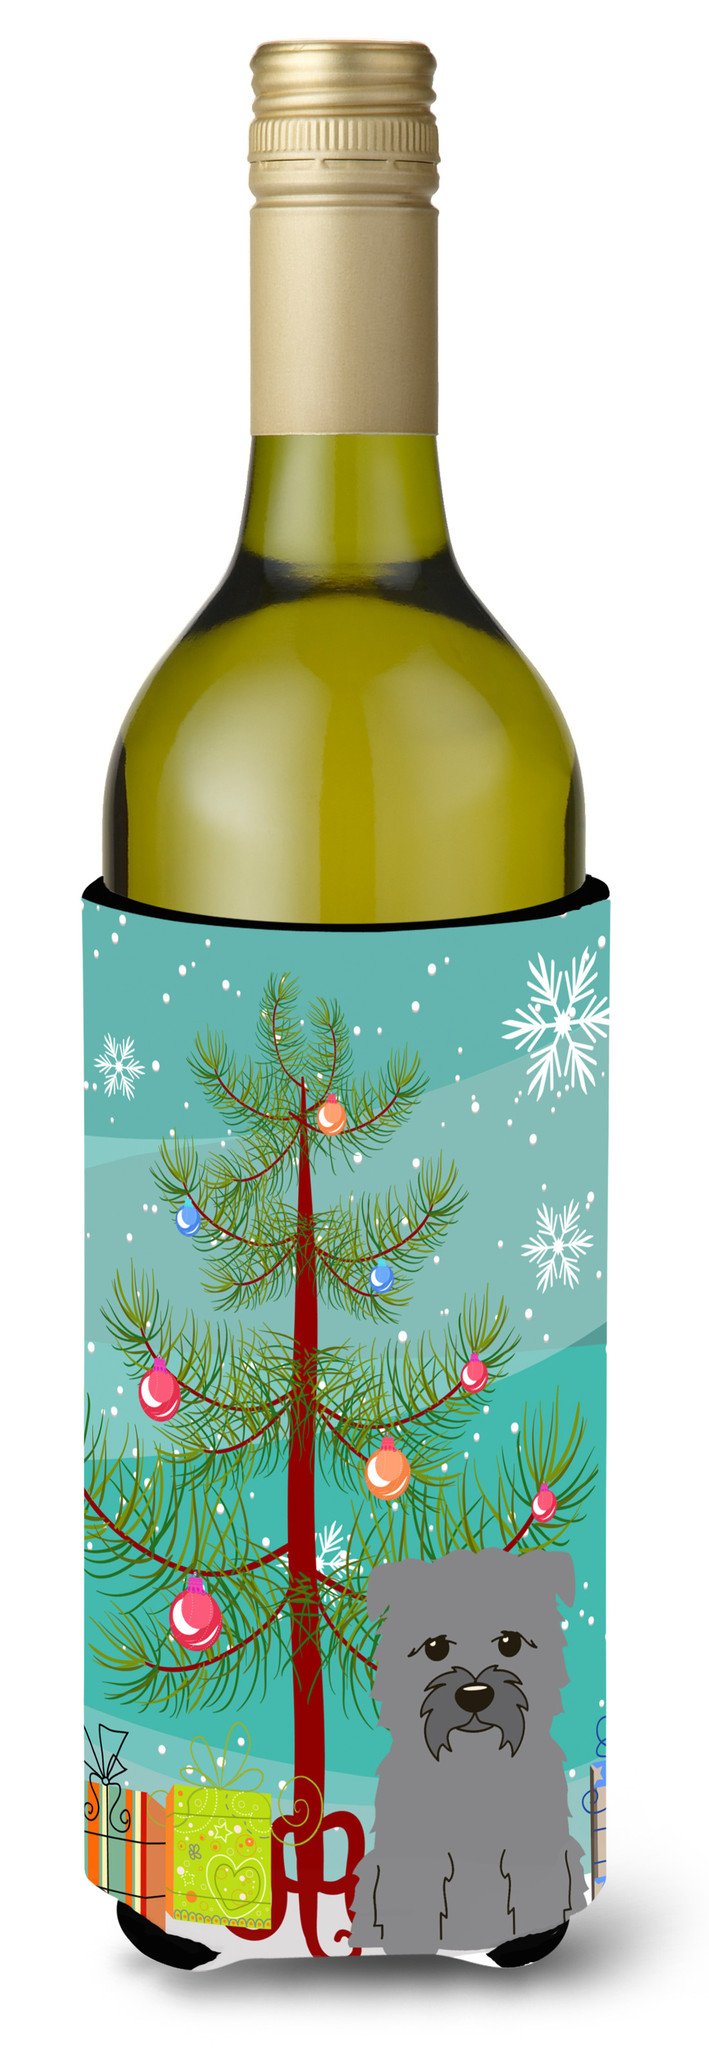 Merry Christmas Tree Glen of Imal Grey Wine Bottle Beverge Insulator Hugger BB4184LITERK by Caroline's Treasures